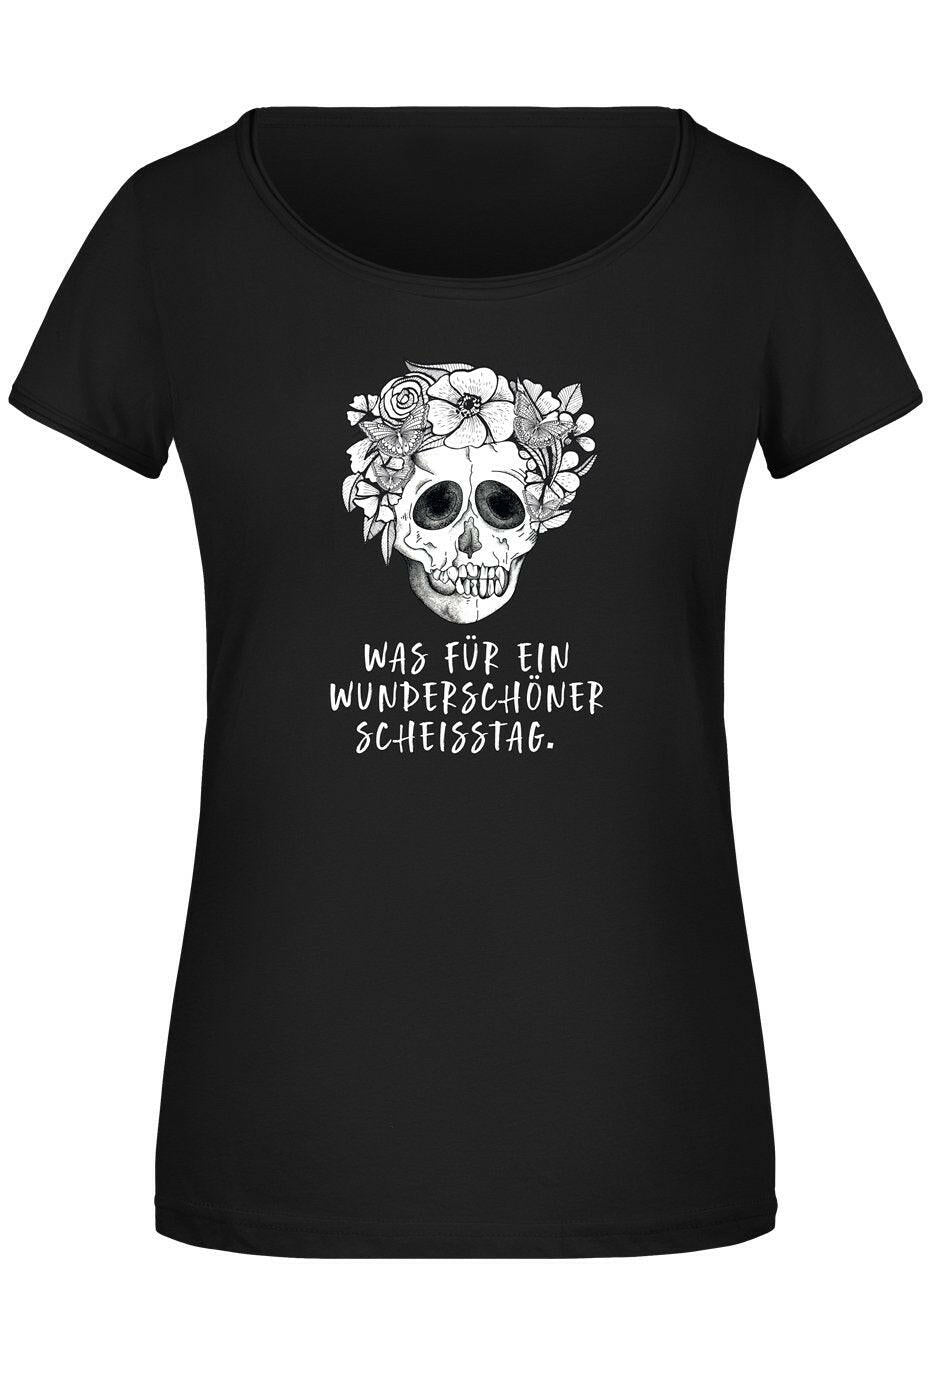 Bild: T-Shirt Damen - Was für ein wunderschöner Scheisstag. - Totenkopf Geschenkidee